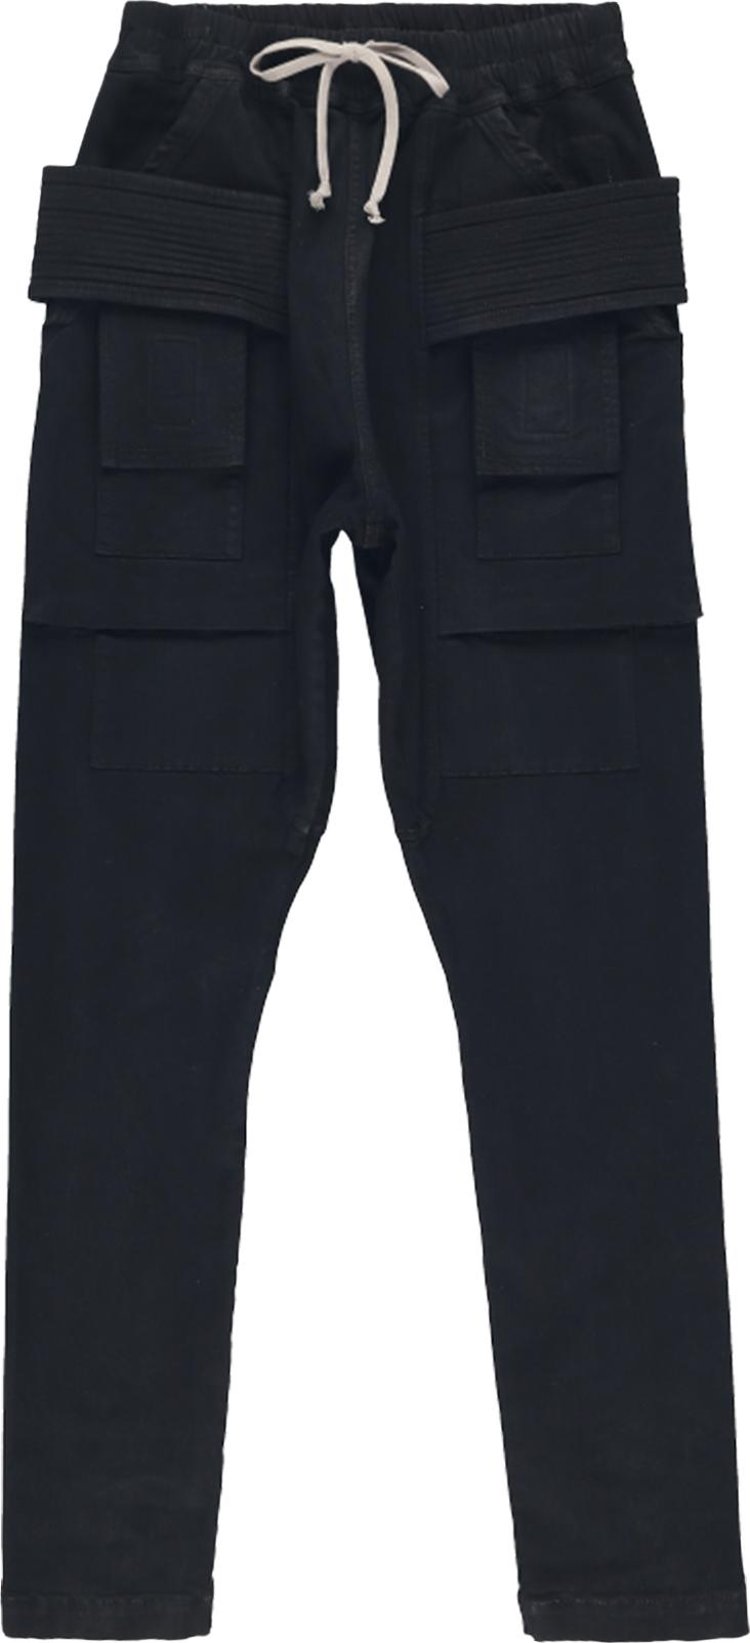 Брюки Rick Owens DRKSHDW Creatch Cargo 'Black', черный джинсовые шорты off white creatch cargo pods rick owens drkshdw